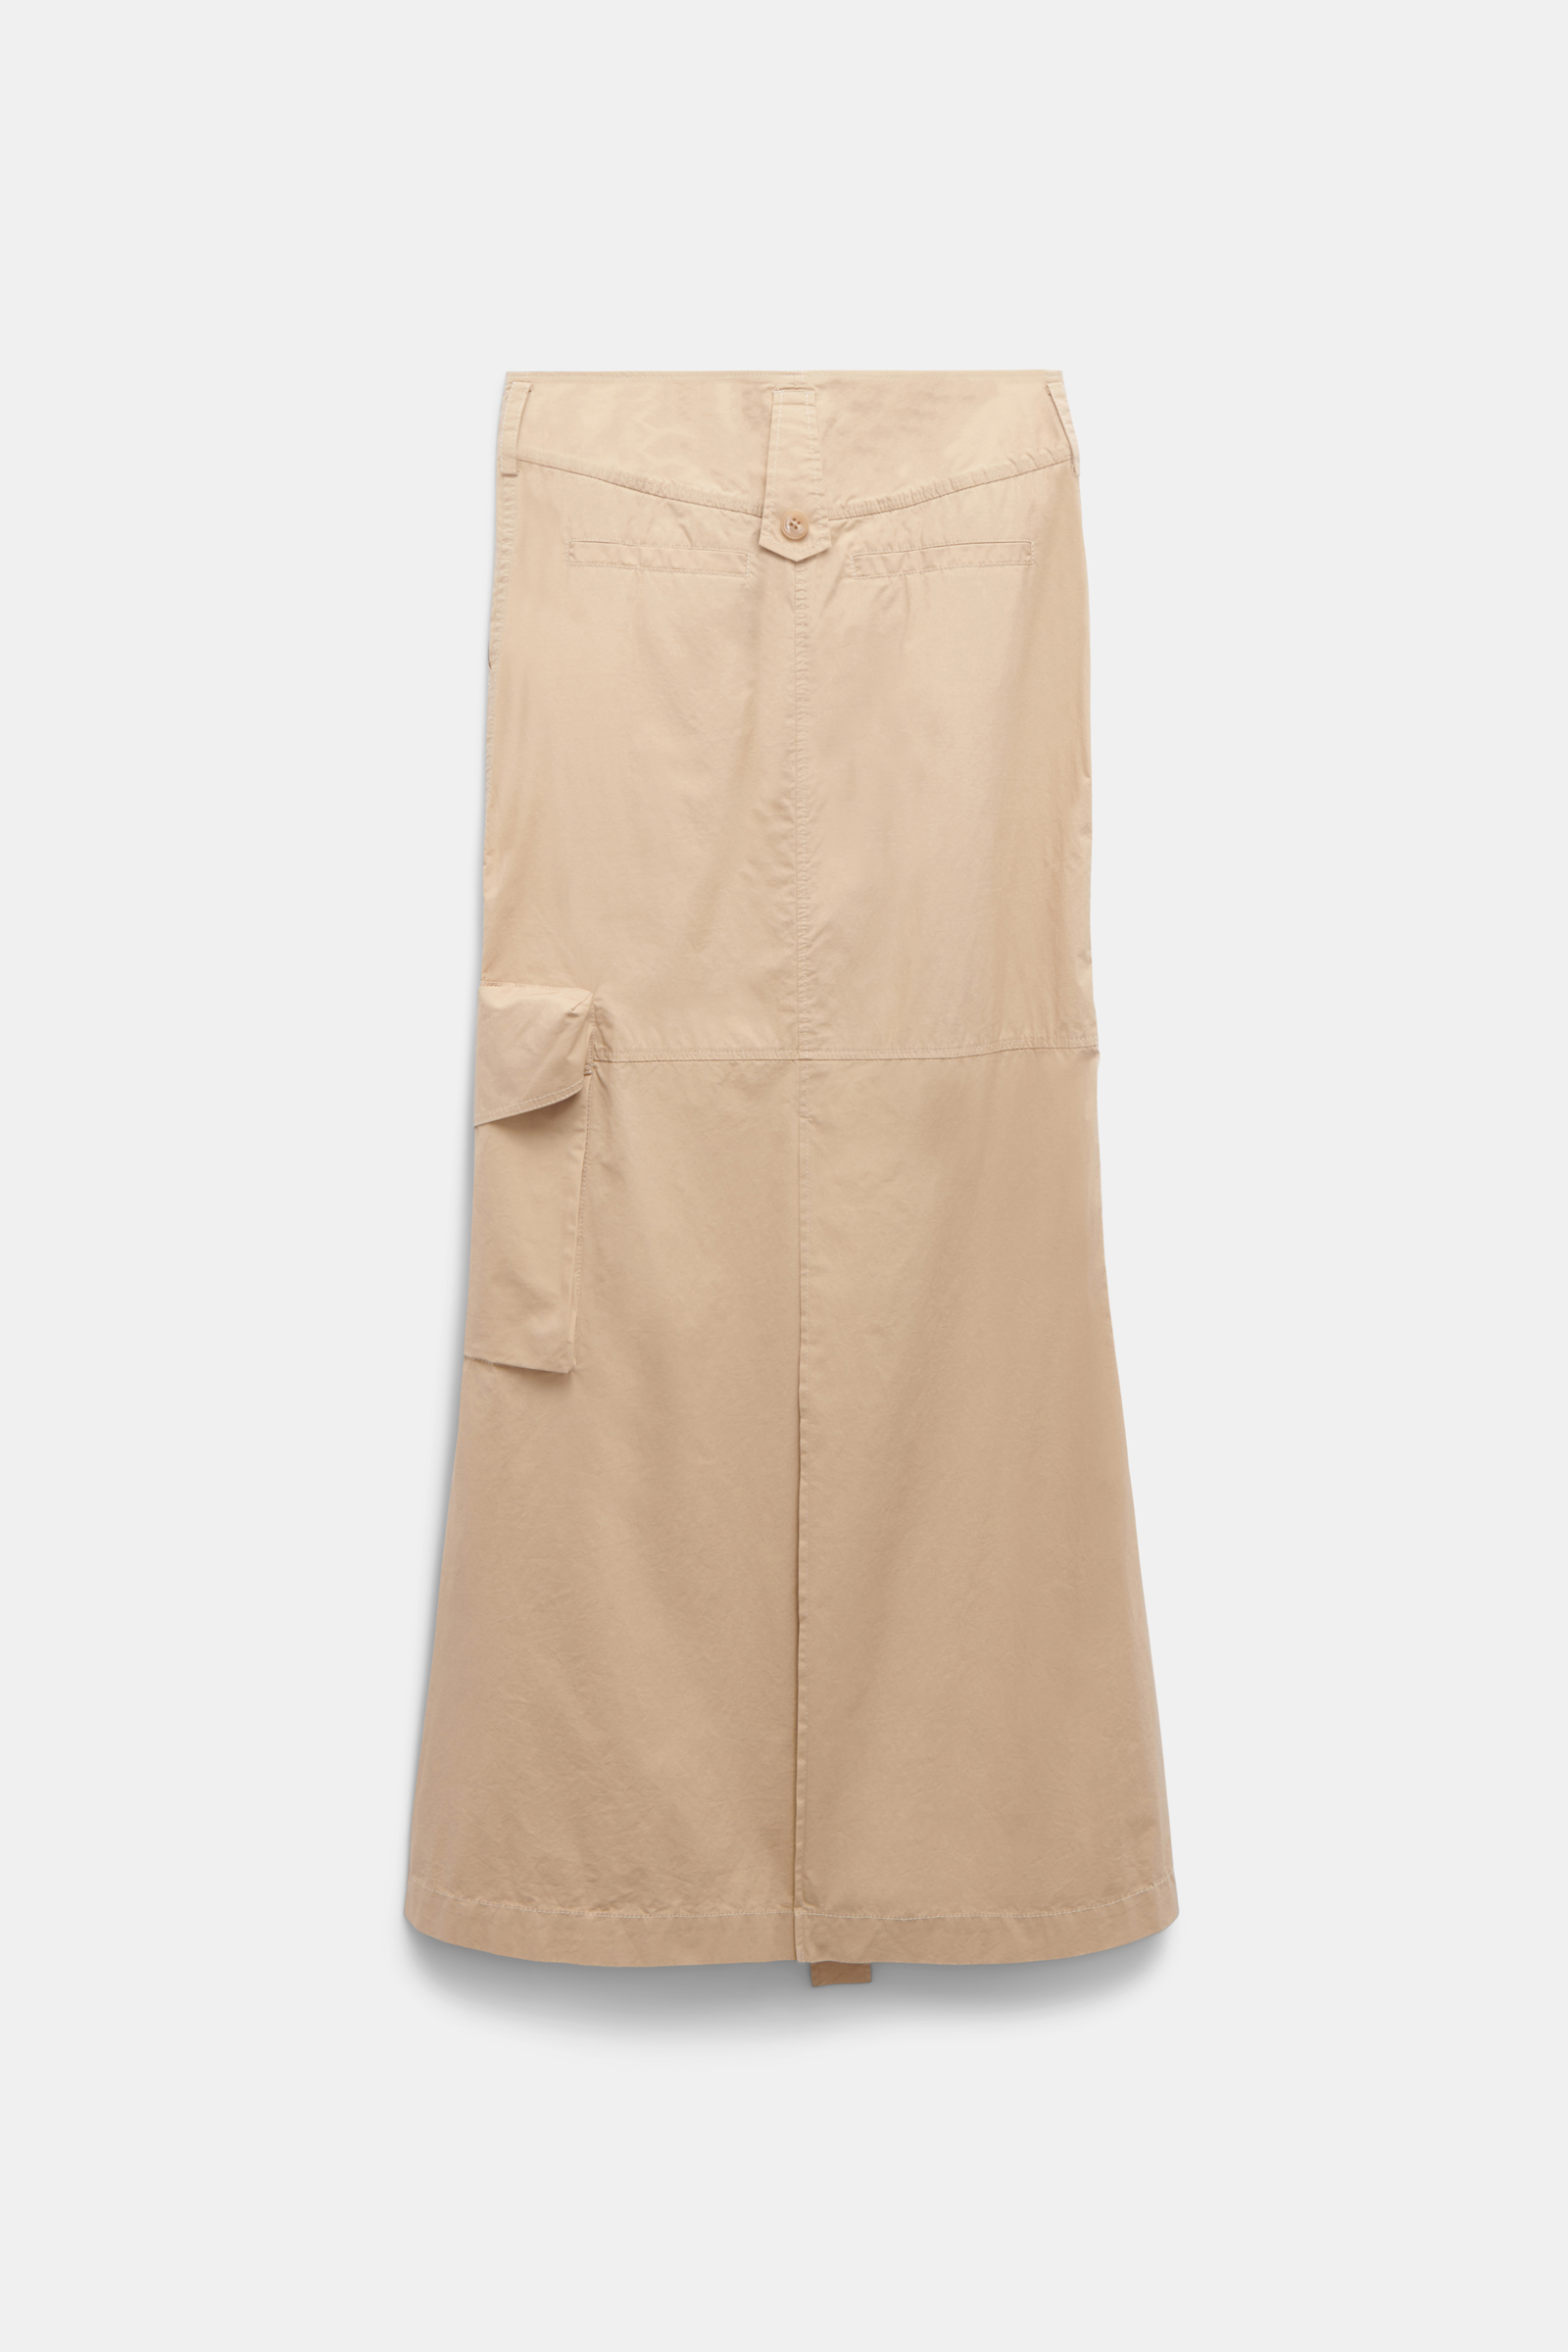 Dorothee Schumacher Skirt with cargo pockets medium beige